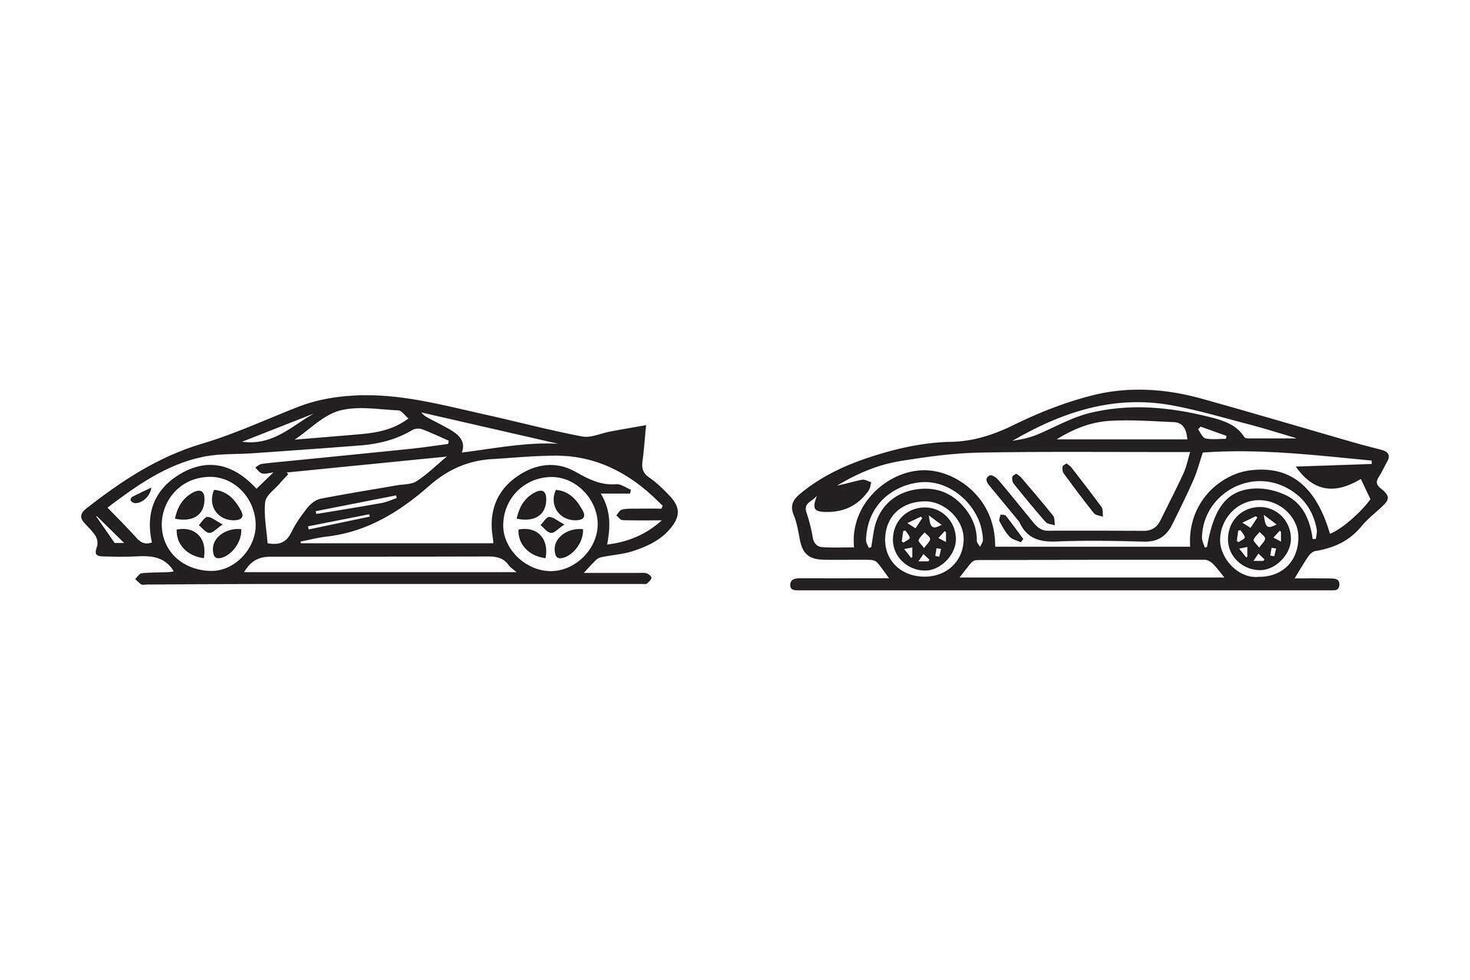 Car design icon vector illustrator